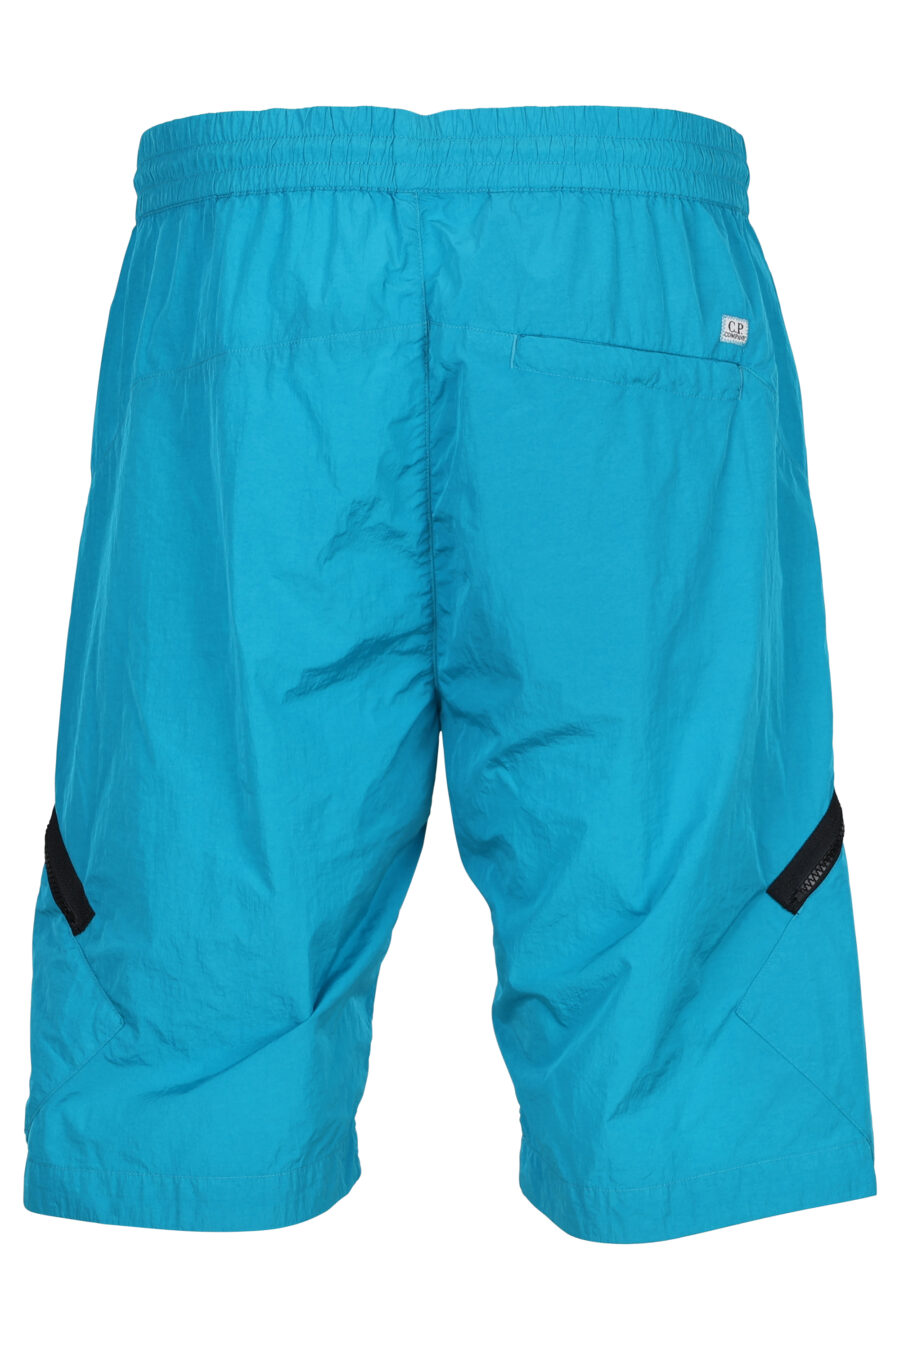 Pantalón corto azul turquesa con cremallera diagonal y logo lente - 7620943384529 2